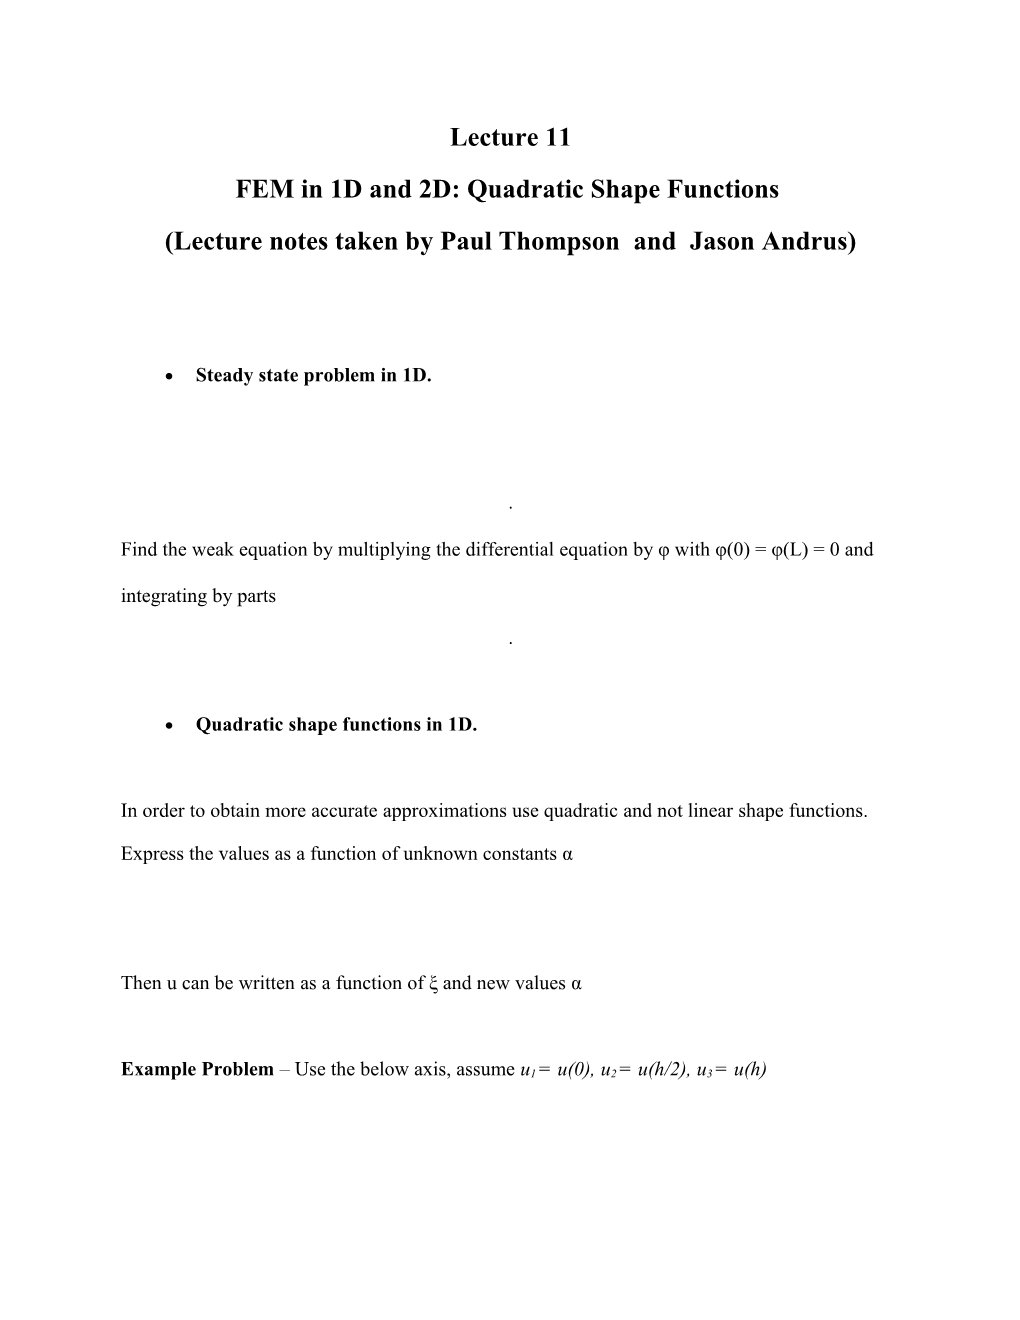 FEM in 1D and 2D: Quadratic Shape Functions